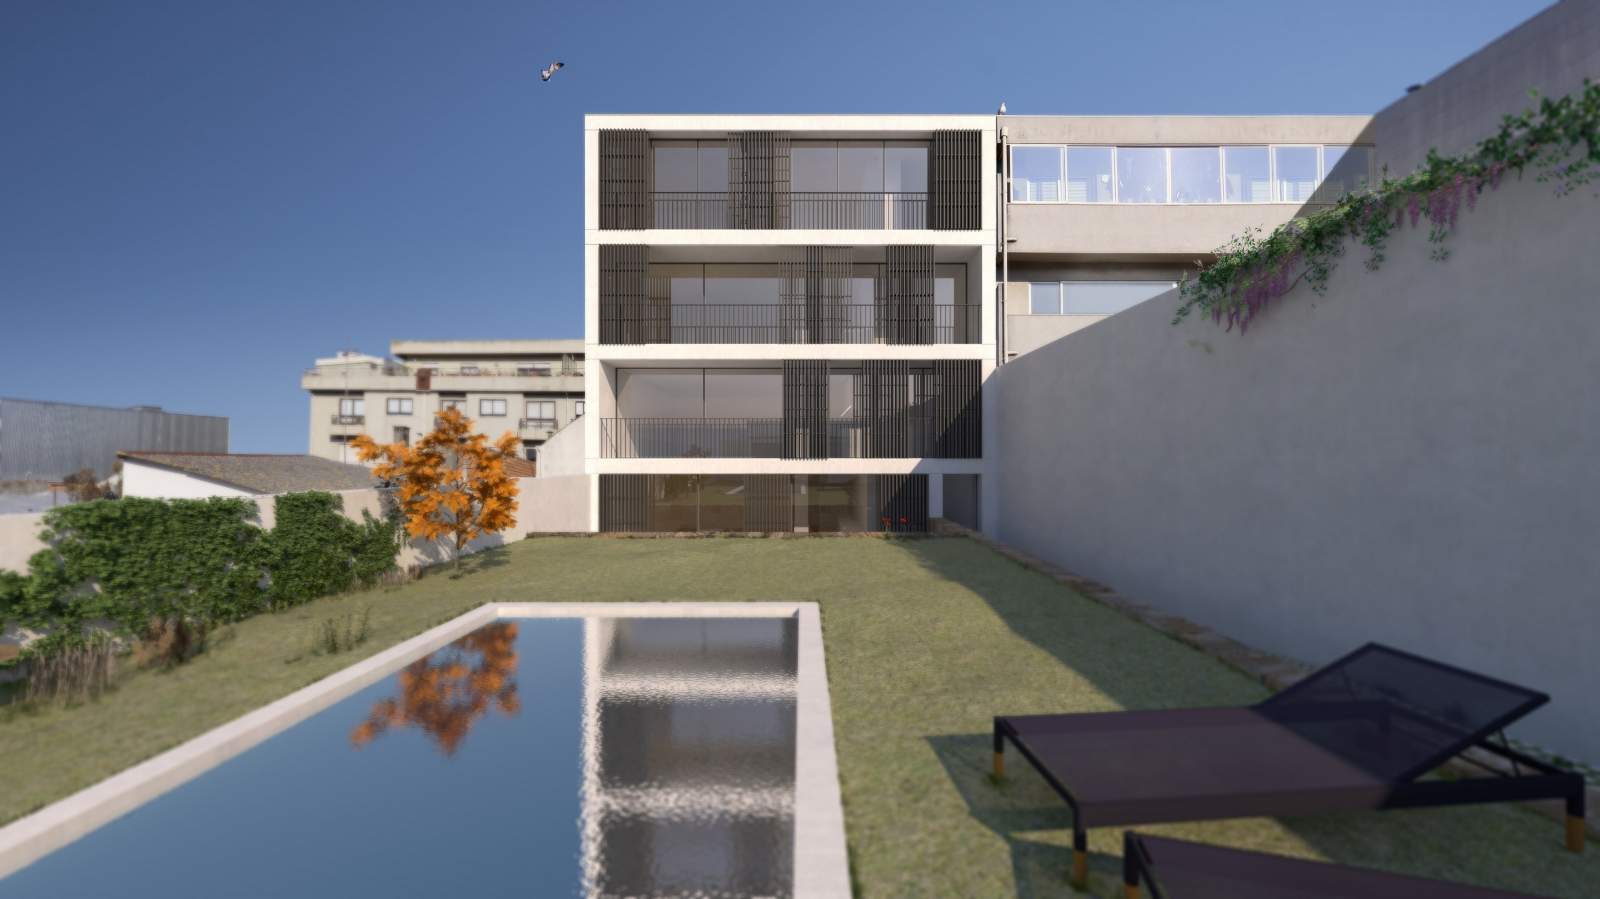 Terreno com projeto aprovado para edifício de 4 apartamentos de luxo, zona premium de Matosinhos_185532